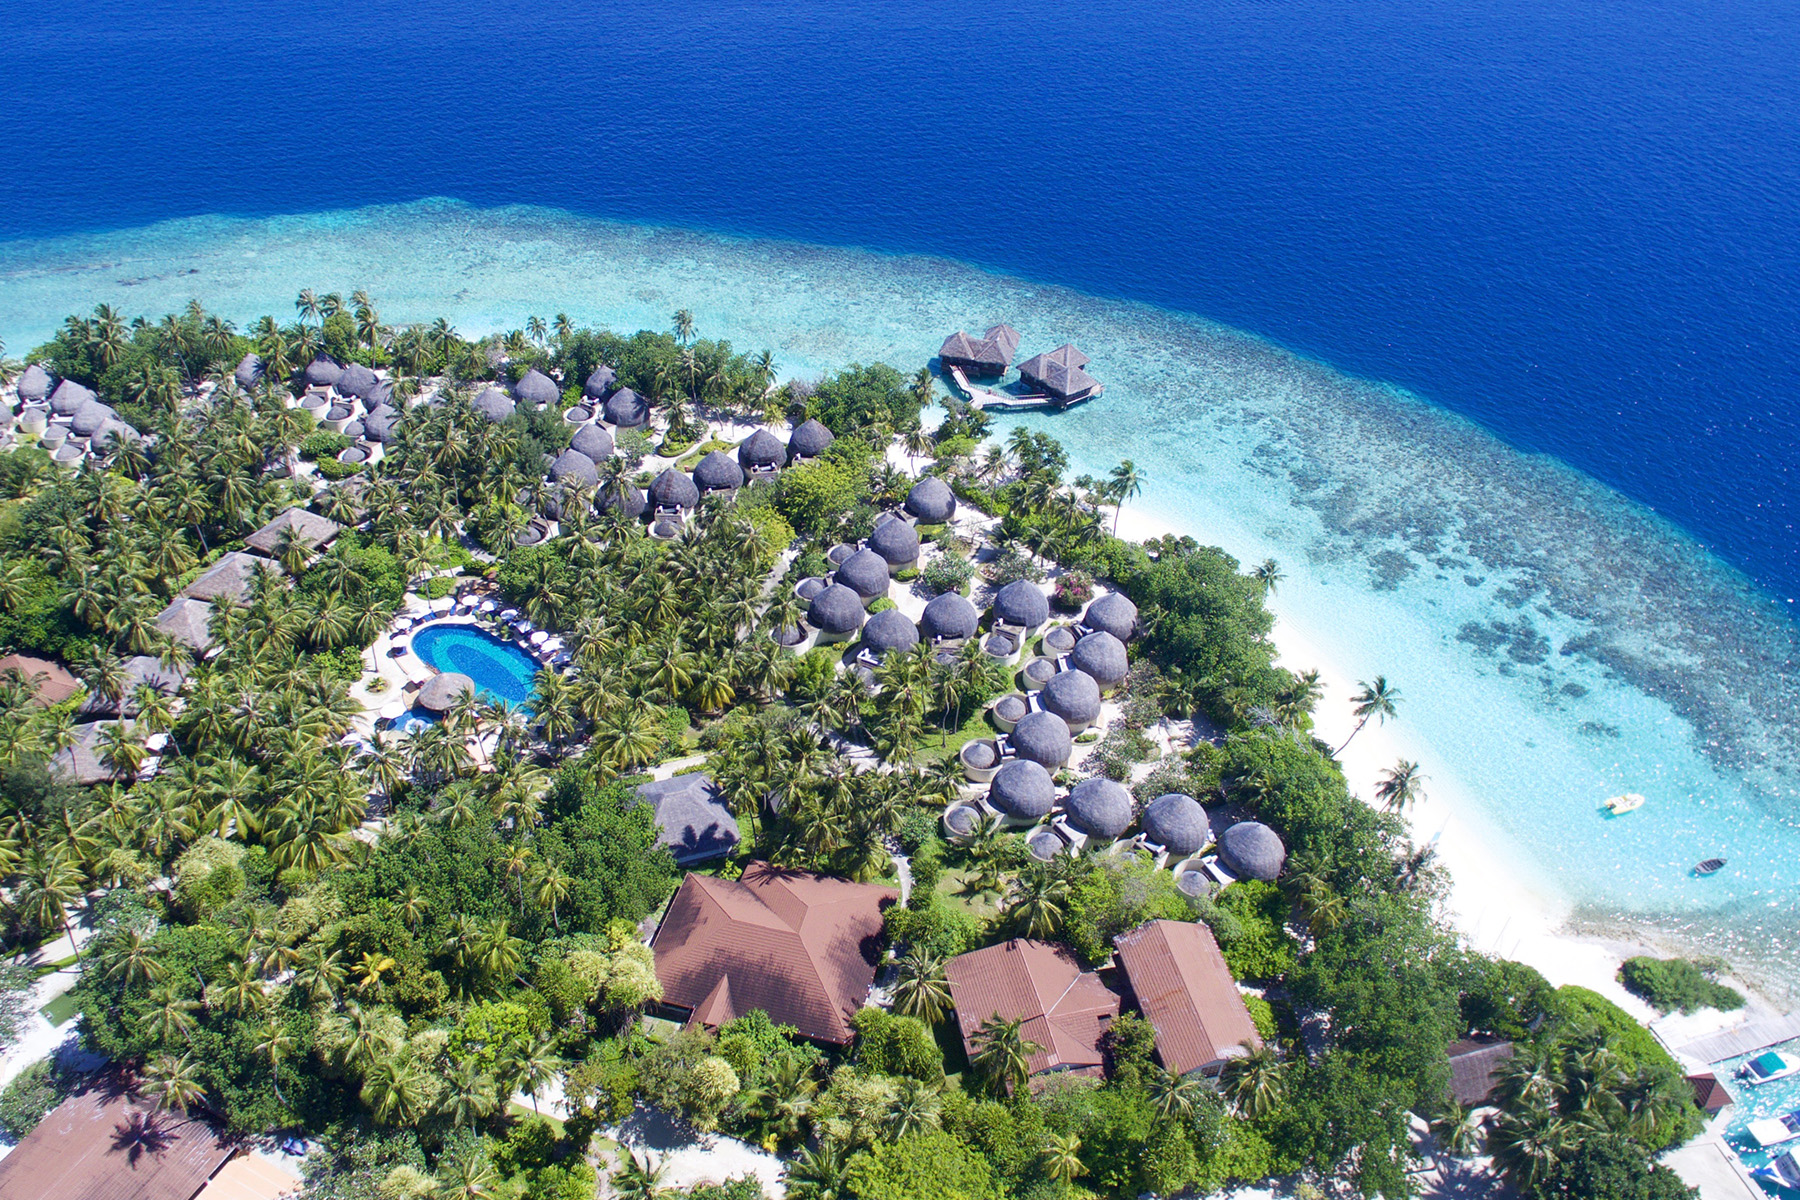 Bandos island resort 4. Отель Bandos Island Resort & Spa 4*. Остров Bandos Мальдивы. Bandos Maldives 4 Мальдивы. Bandos Maldives (ex. Bandos Island Resort) 4* Мальдивы,.